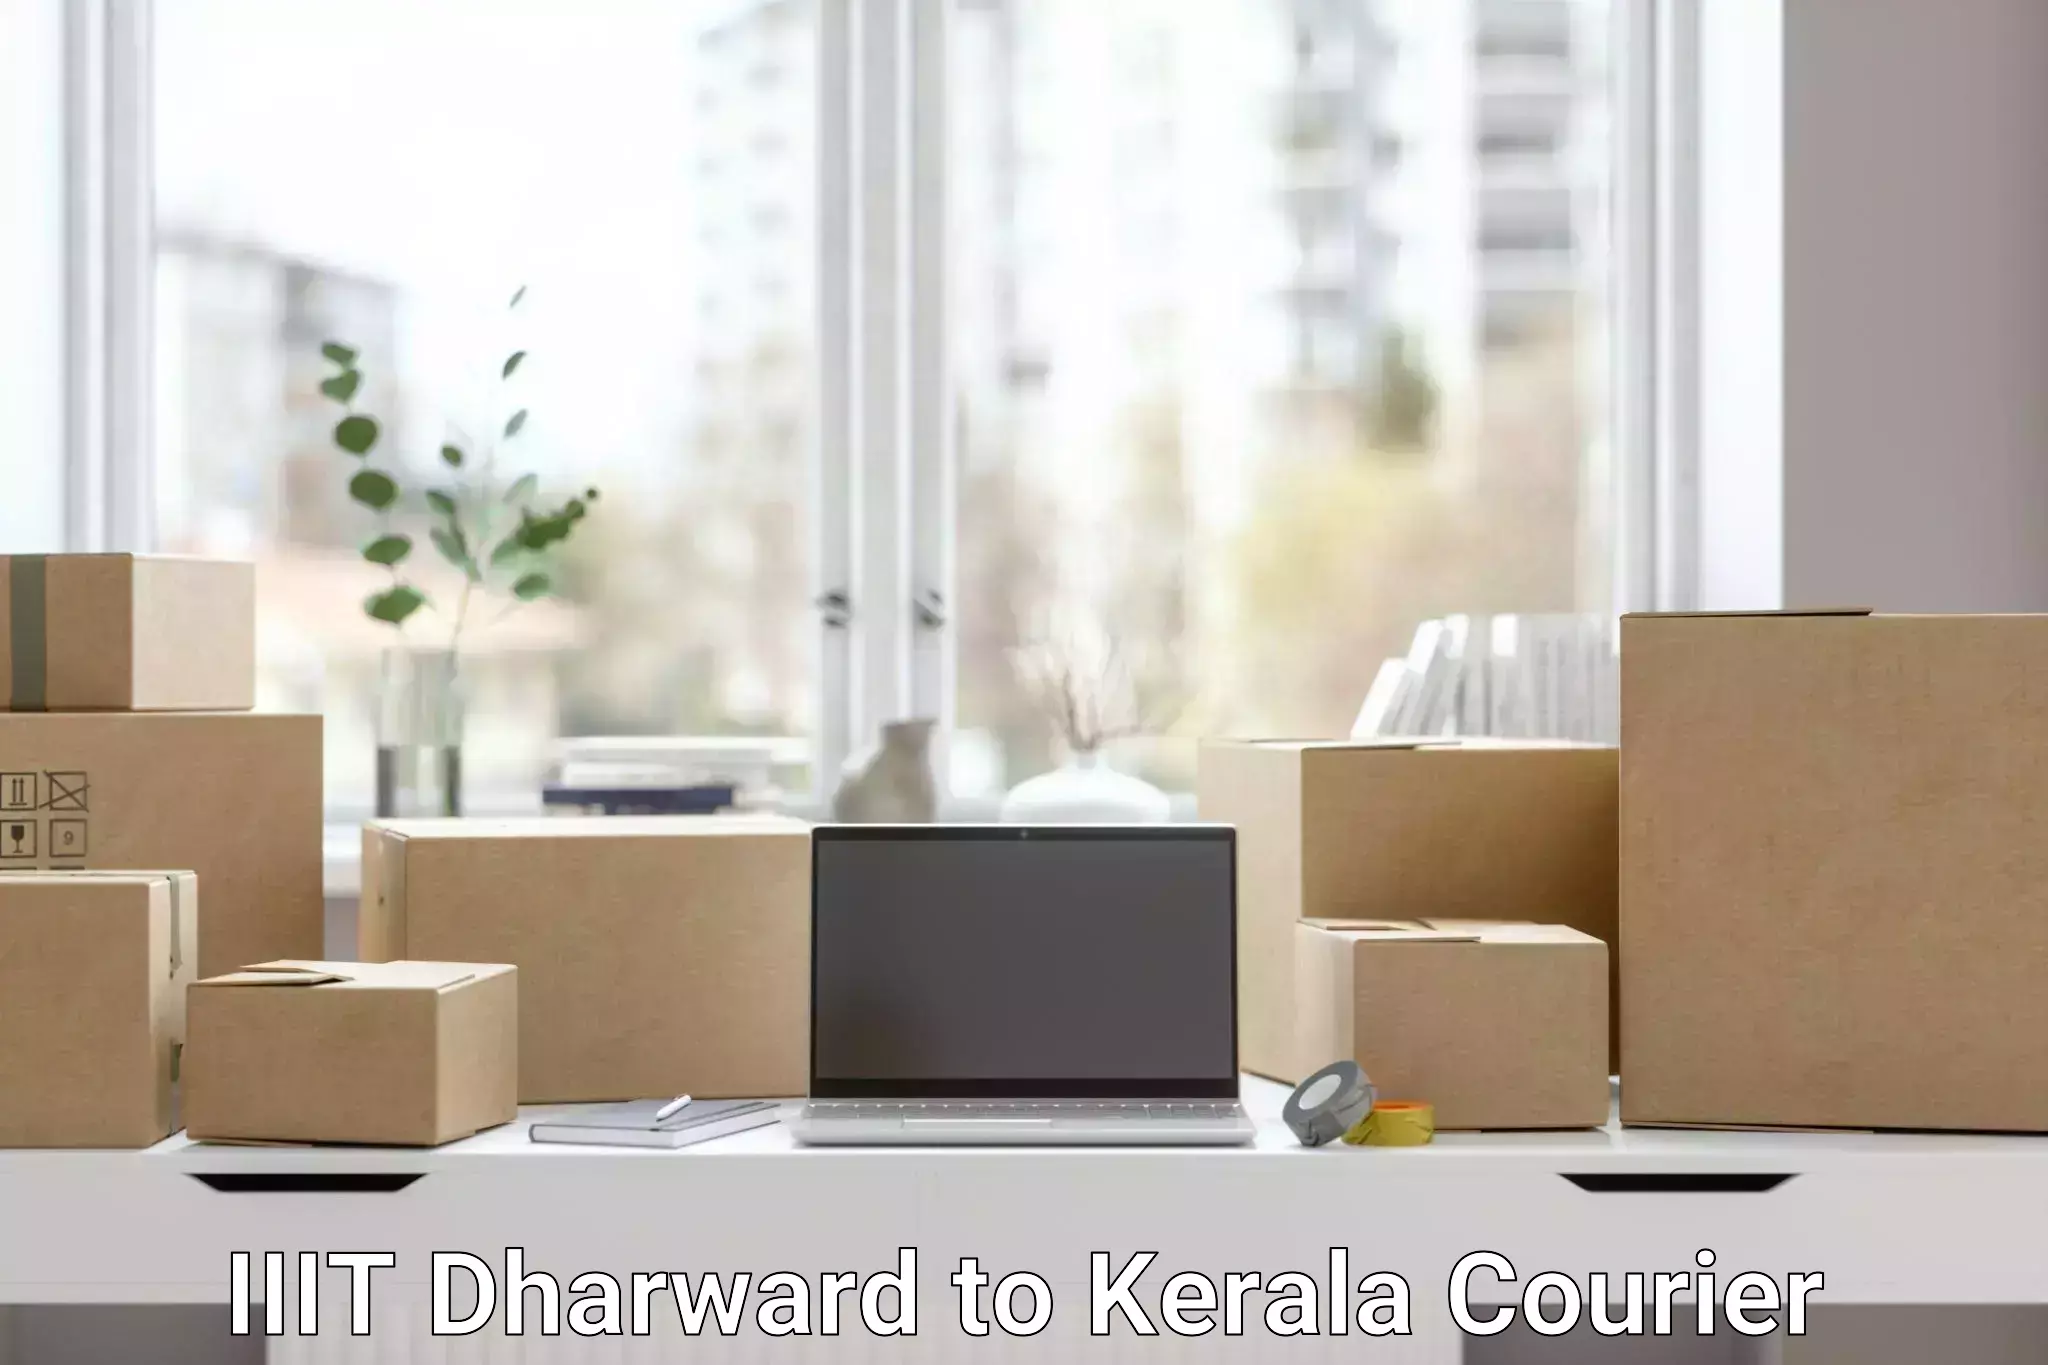 E-commerce fulfillment in IIIT Dharward to Adoor